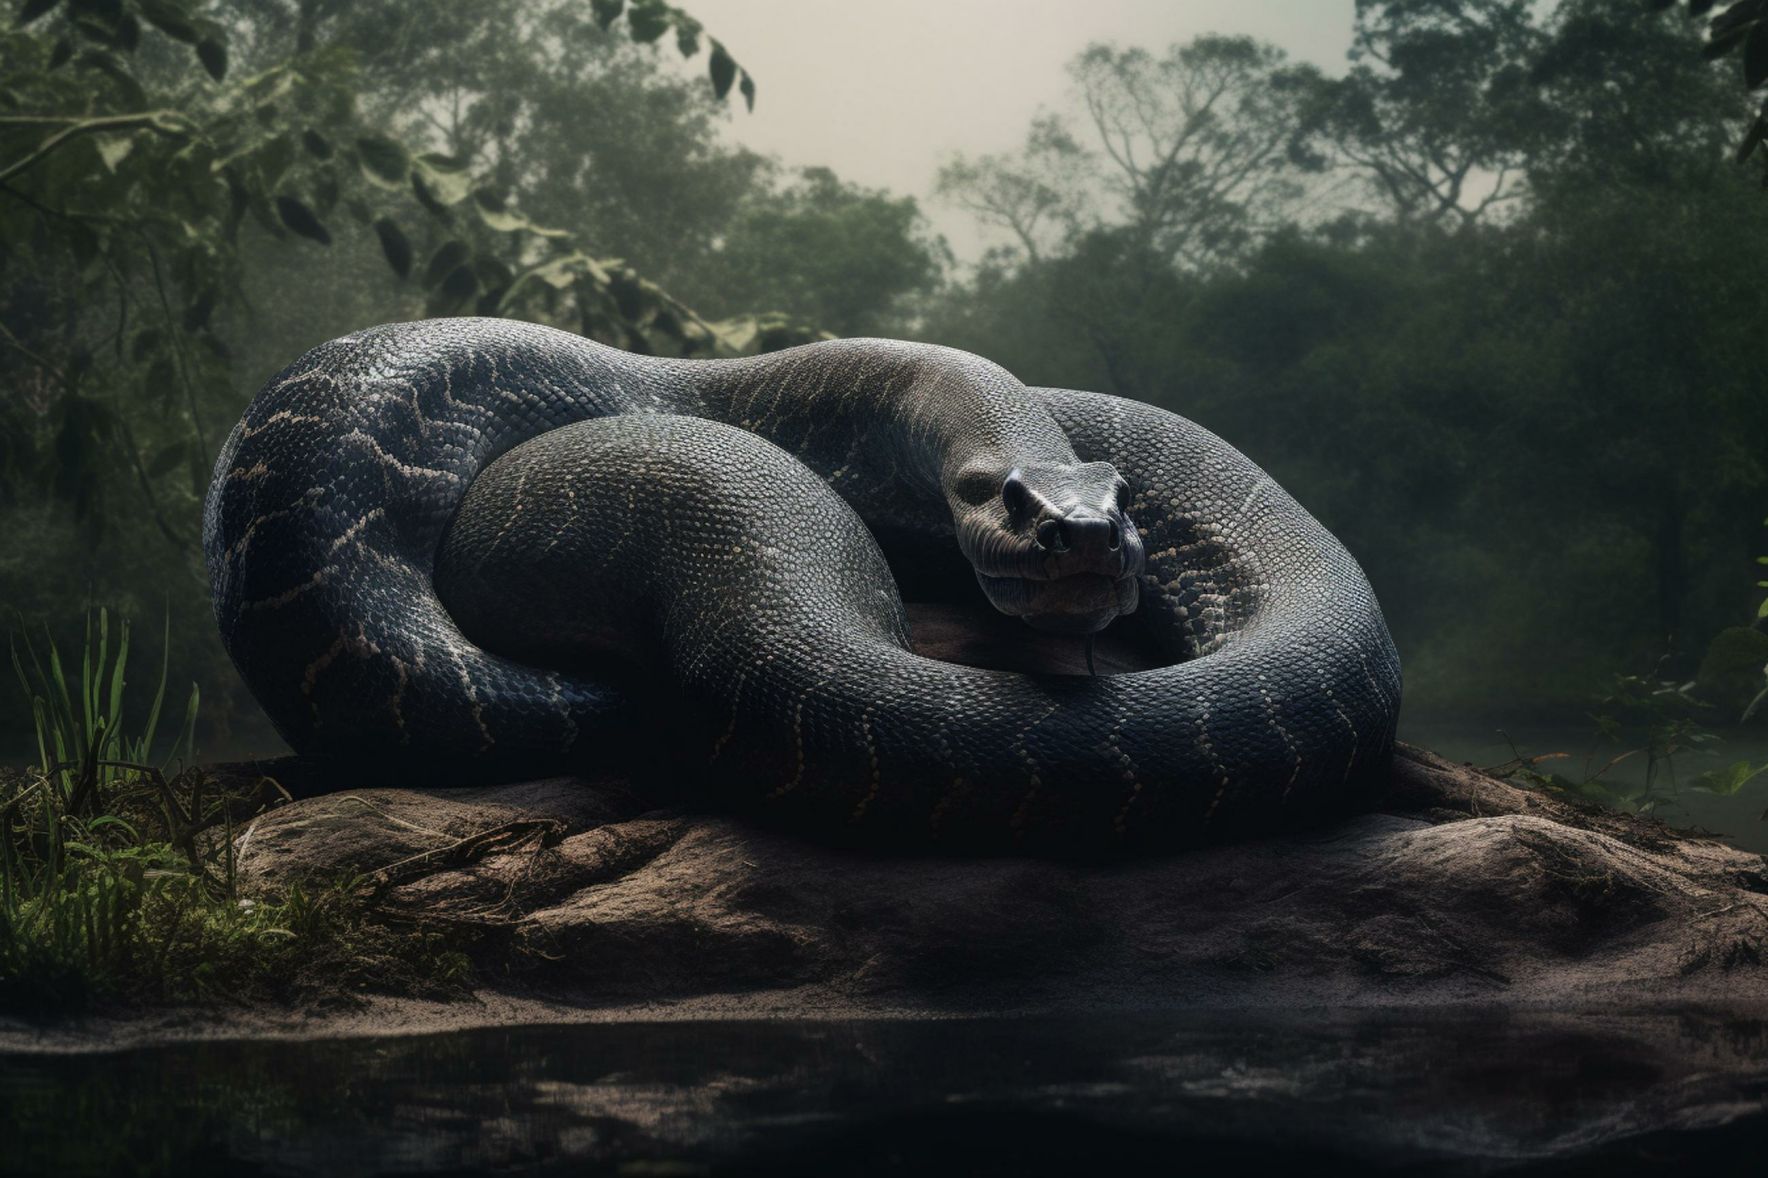 Geïsoleerde beeld van Titanoboa, die grootste slang ooit, is 48 voet lank